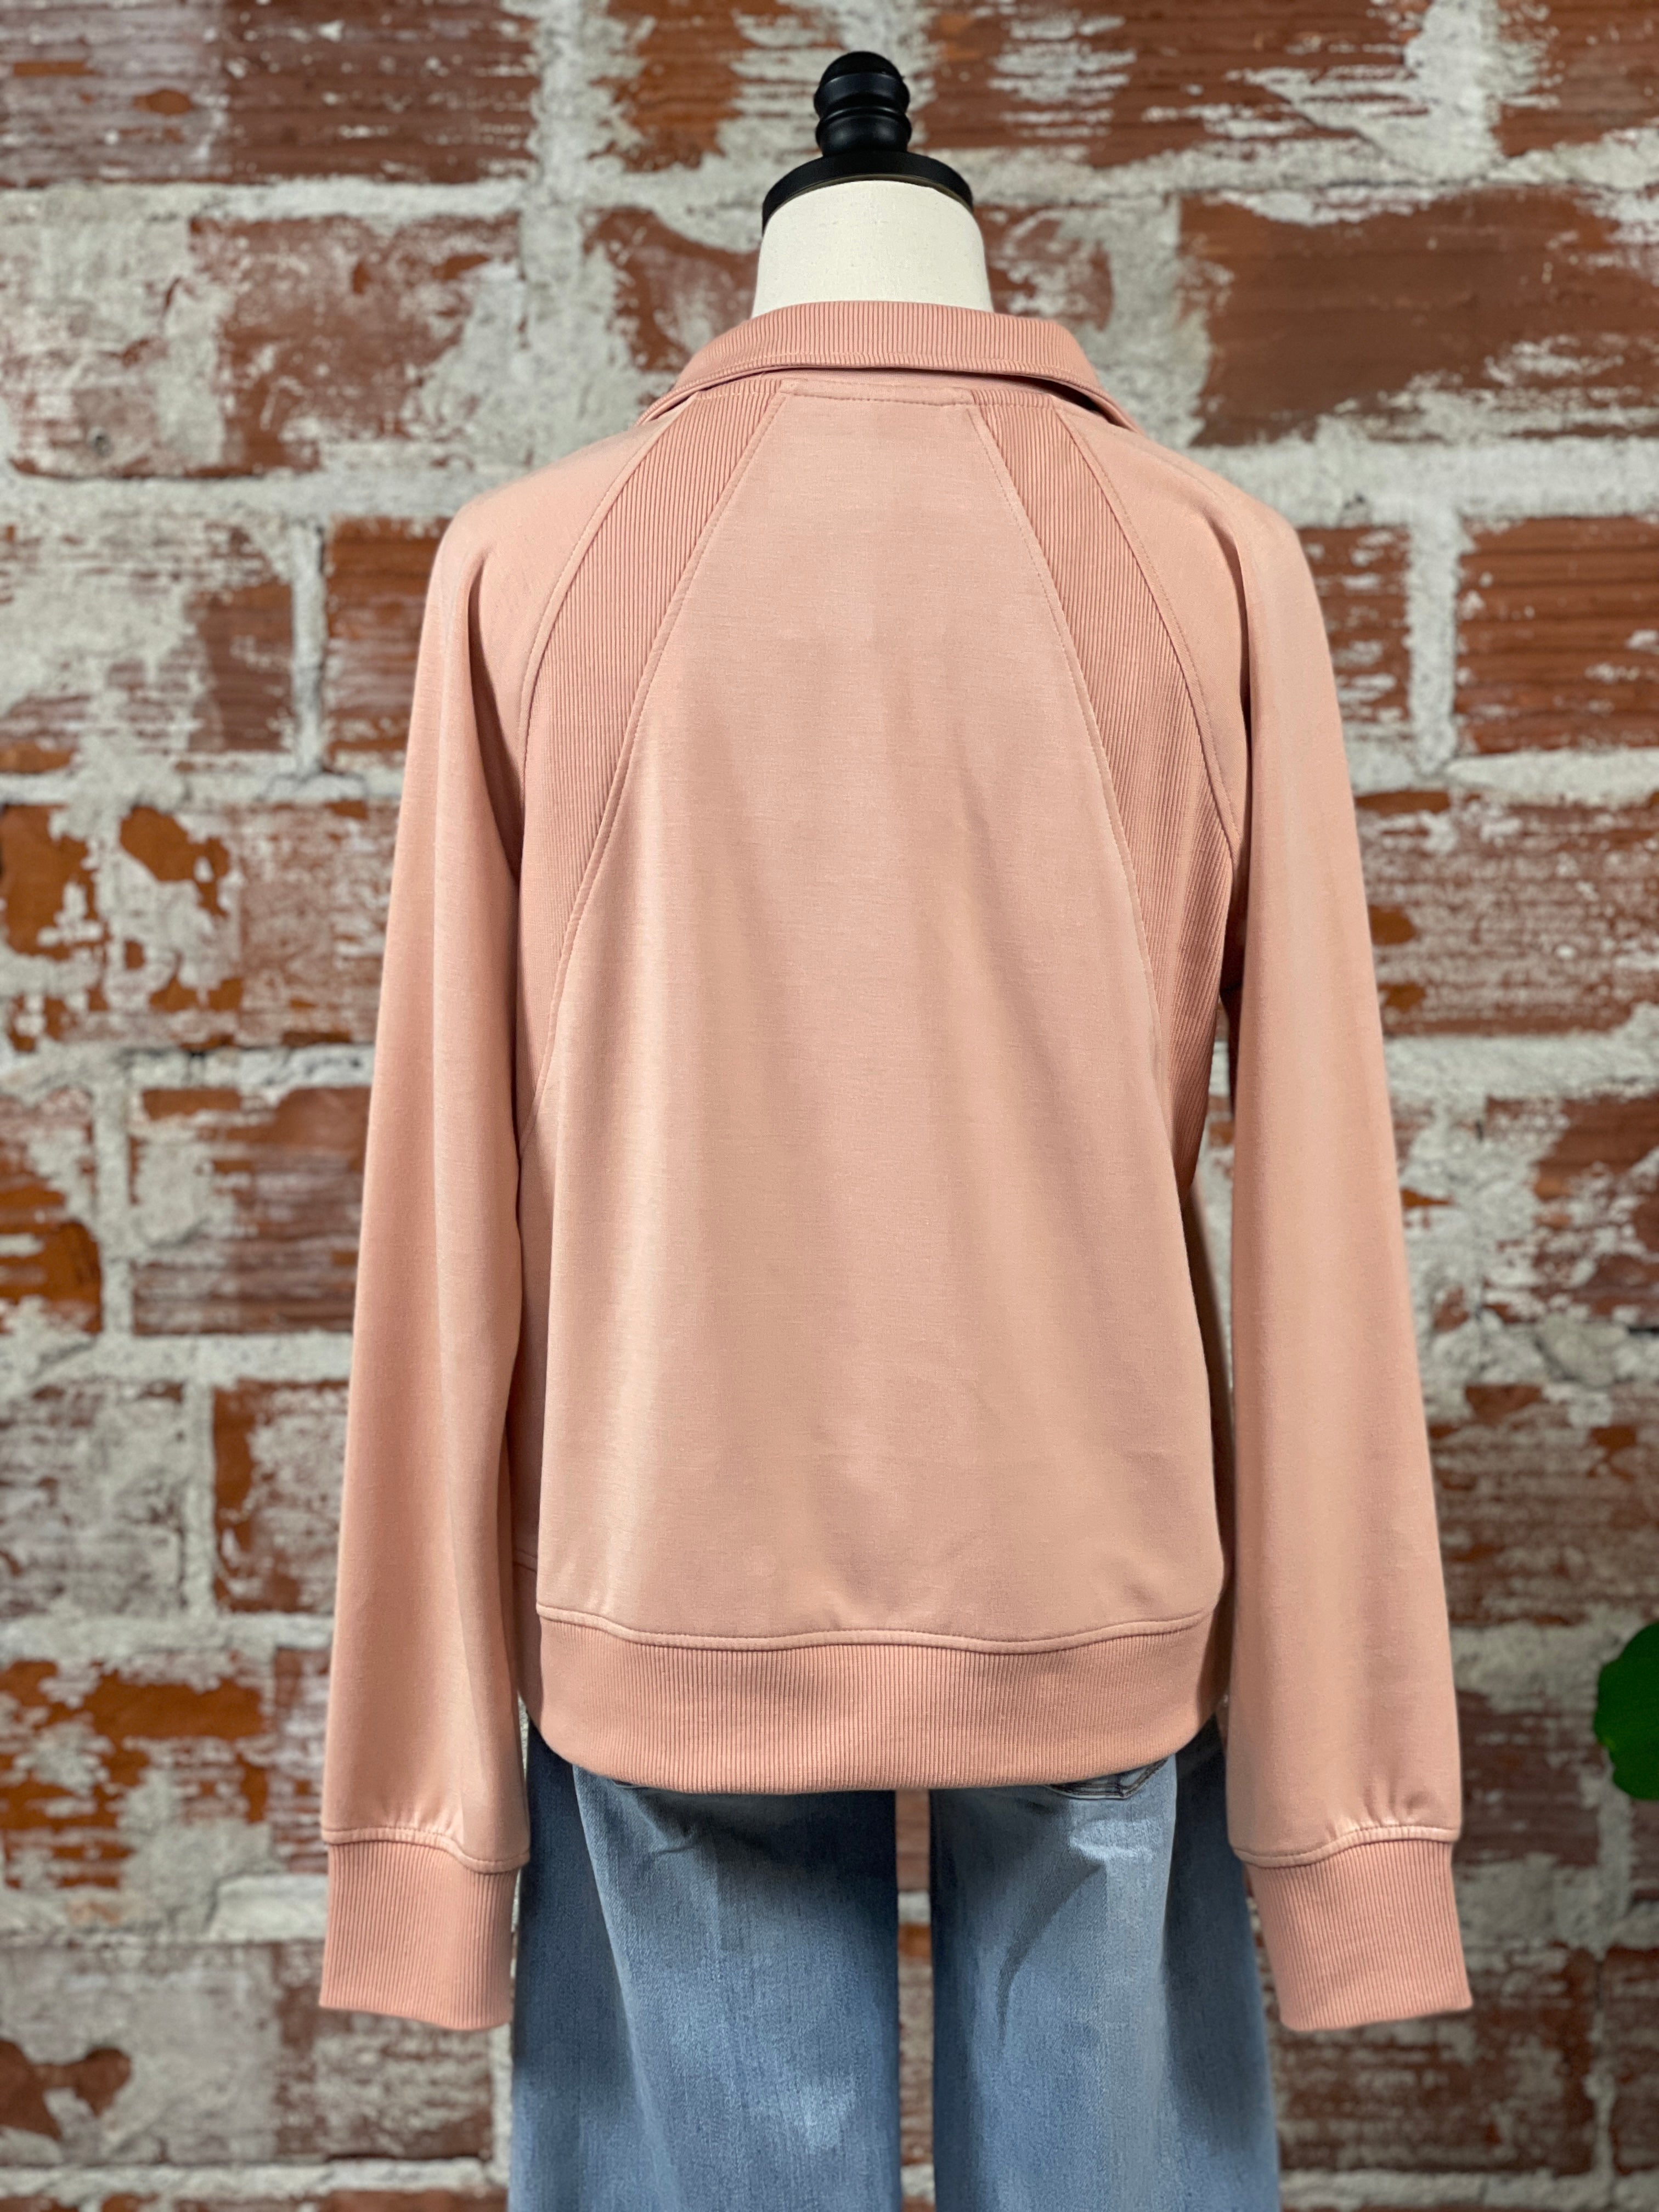 Thread & Supply Angie Jacket in Dusty Peach-142 Sweatshirts & Hoodies-Little Bird Boutique